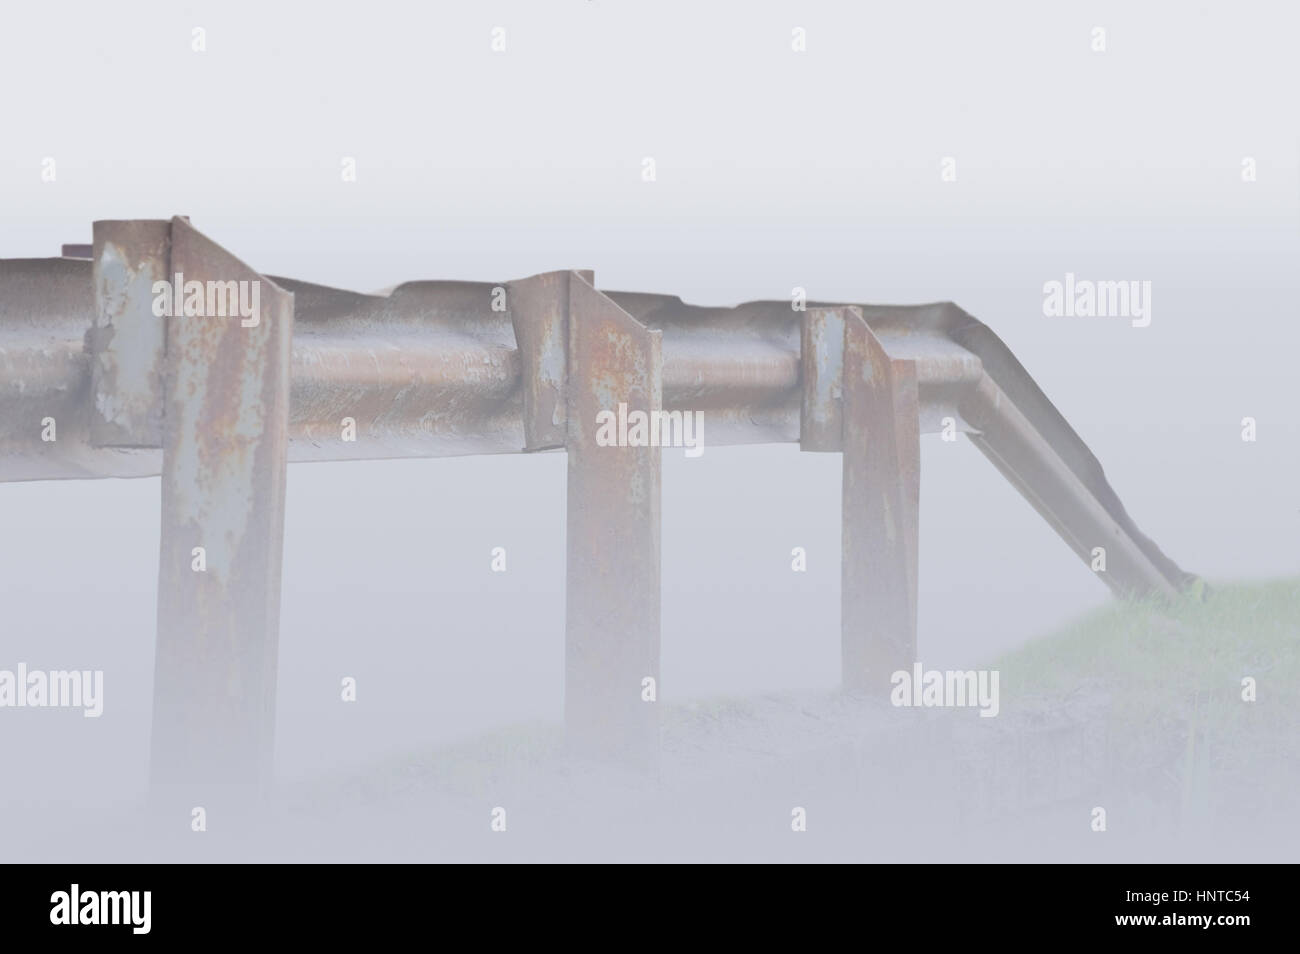 Ancien rusty grunge pont métallique ferroviaire, shoruded point de vue dans la brume closeup Banque D'Images